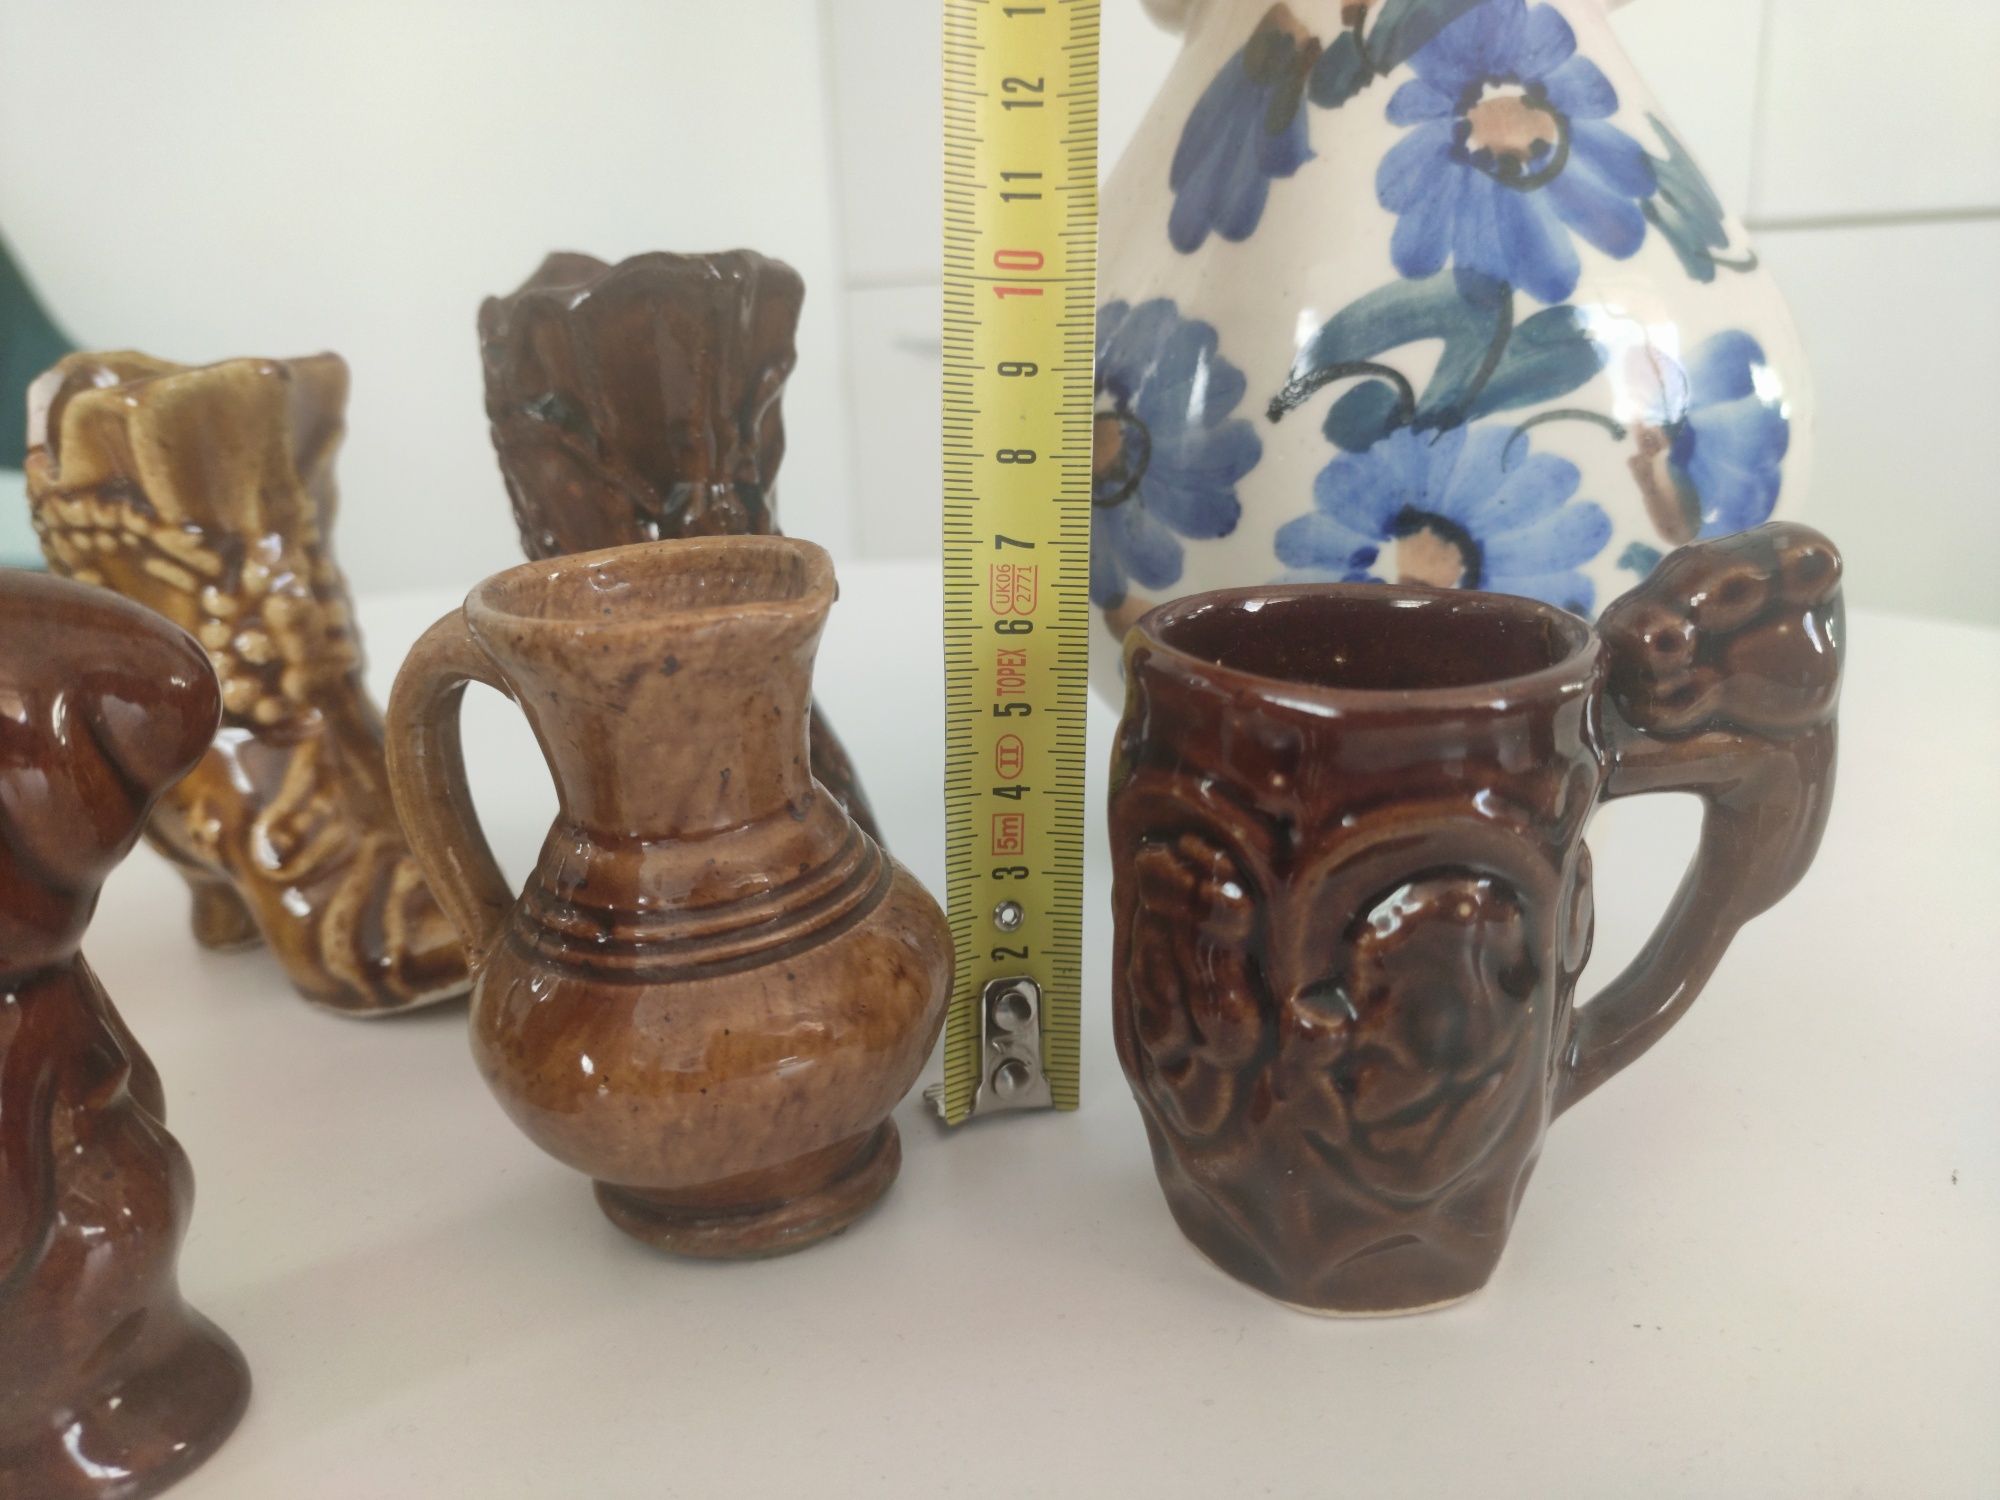 Kolekcjonerski zestaw porcelany: figurki, wazoniki, wazon, dwojaki